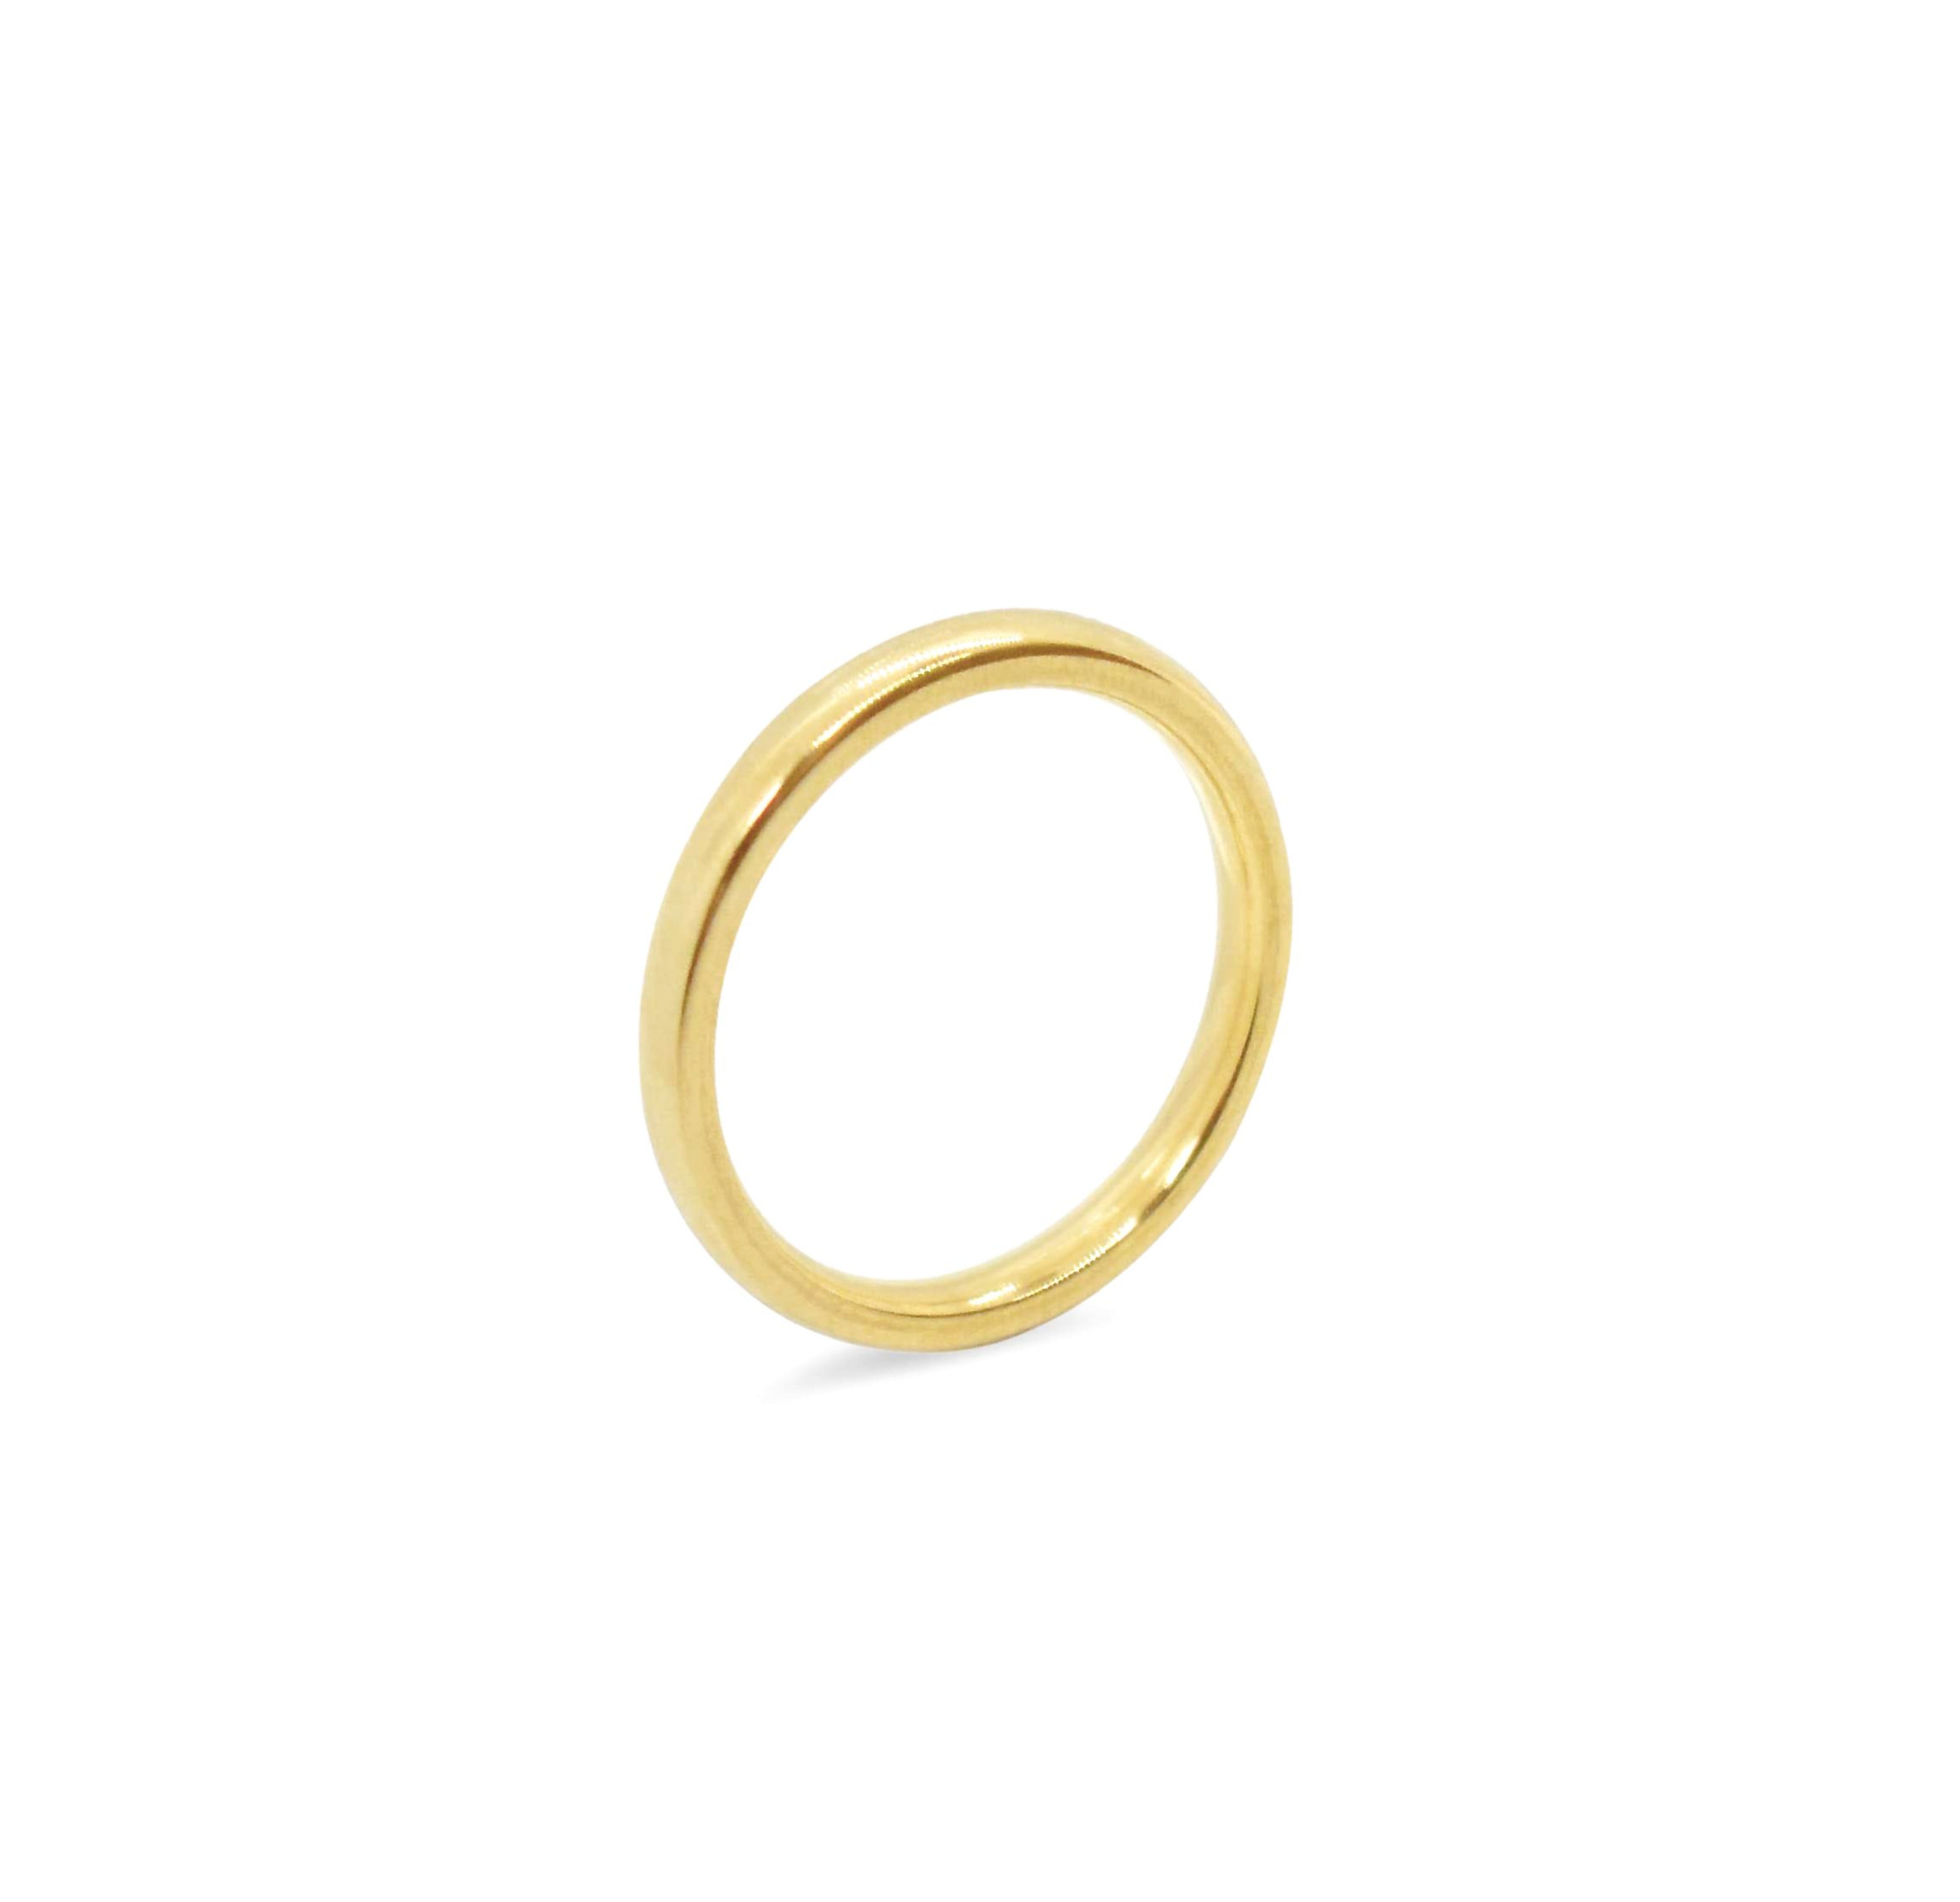 Didi thin gold ring band, waterproof rings